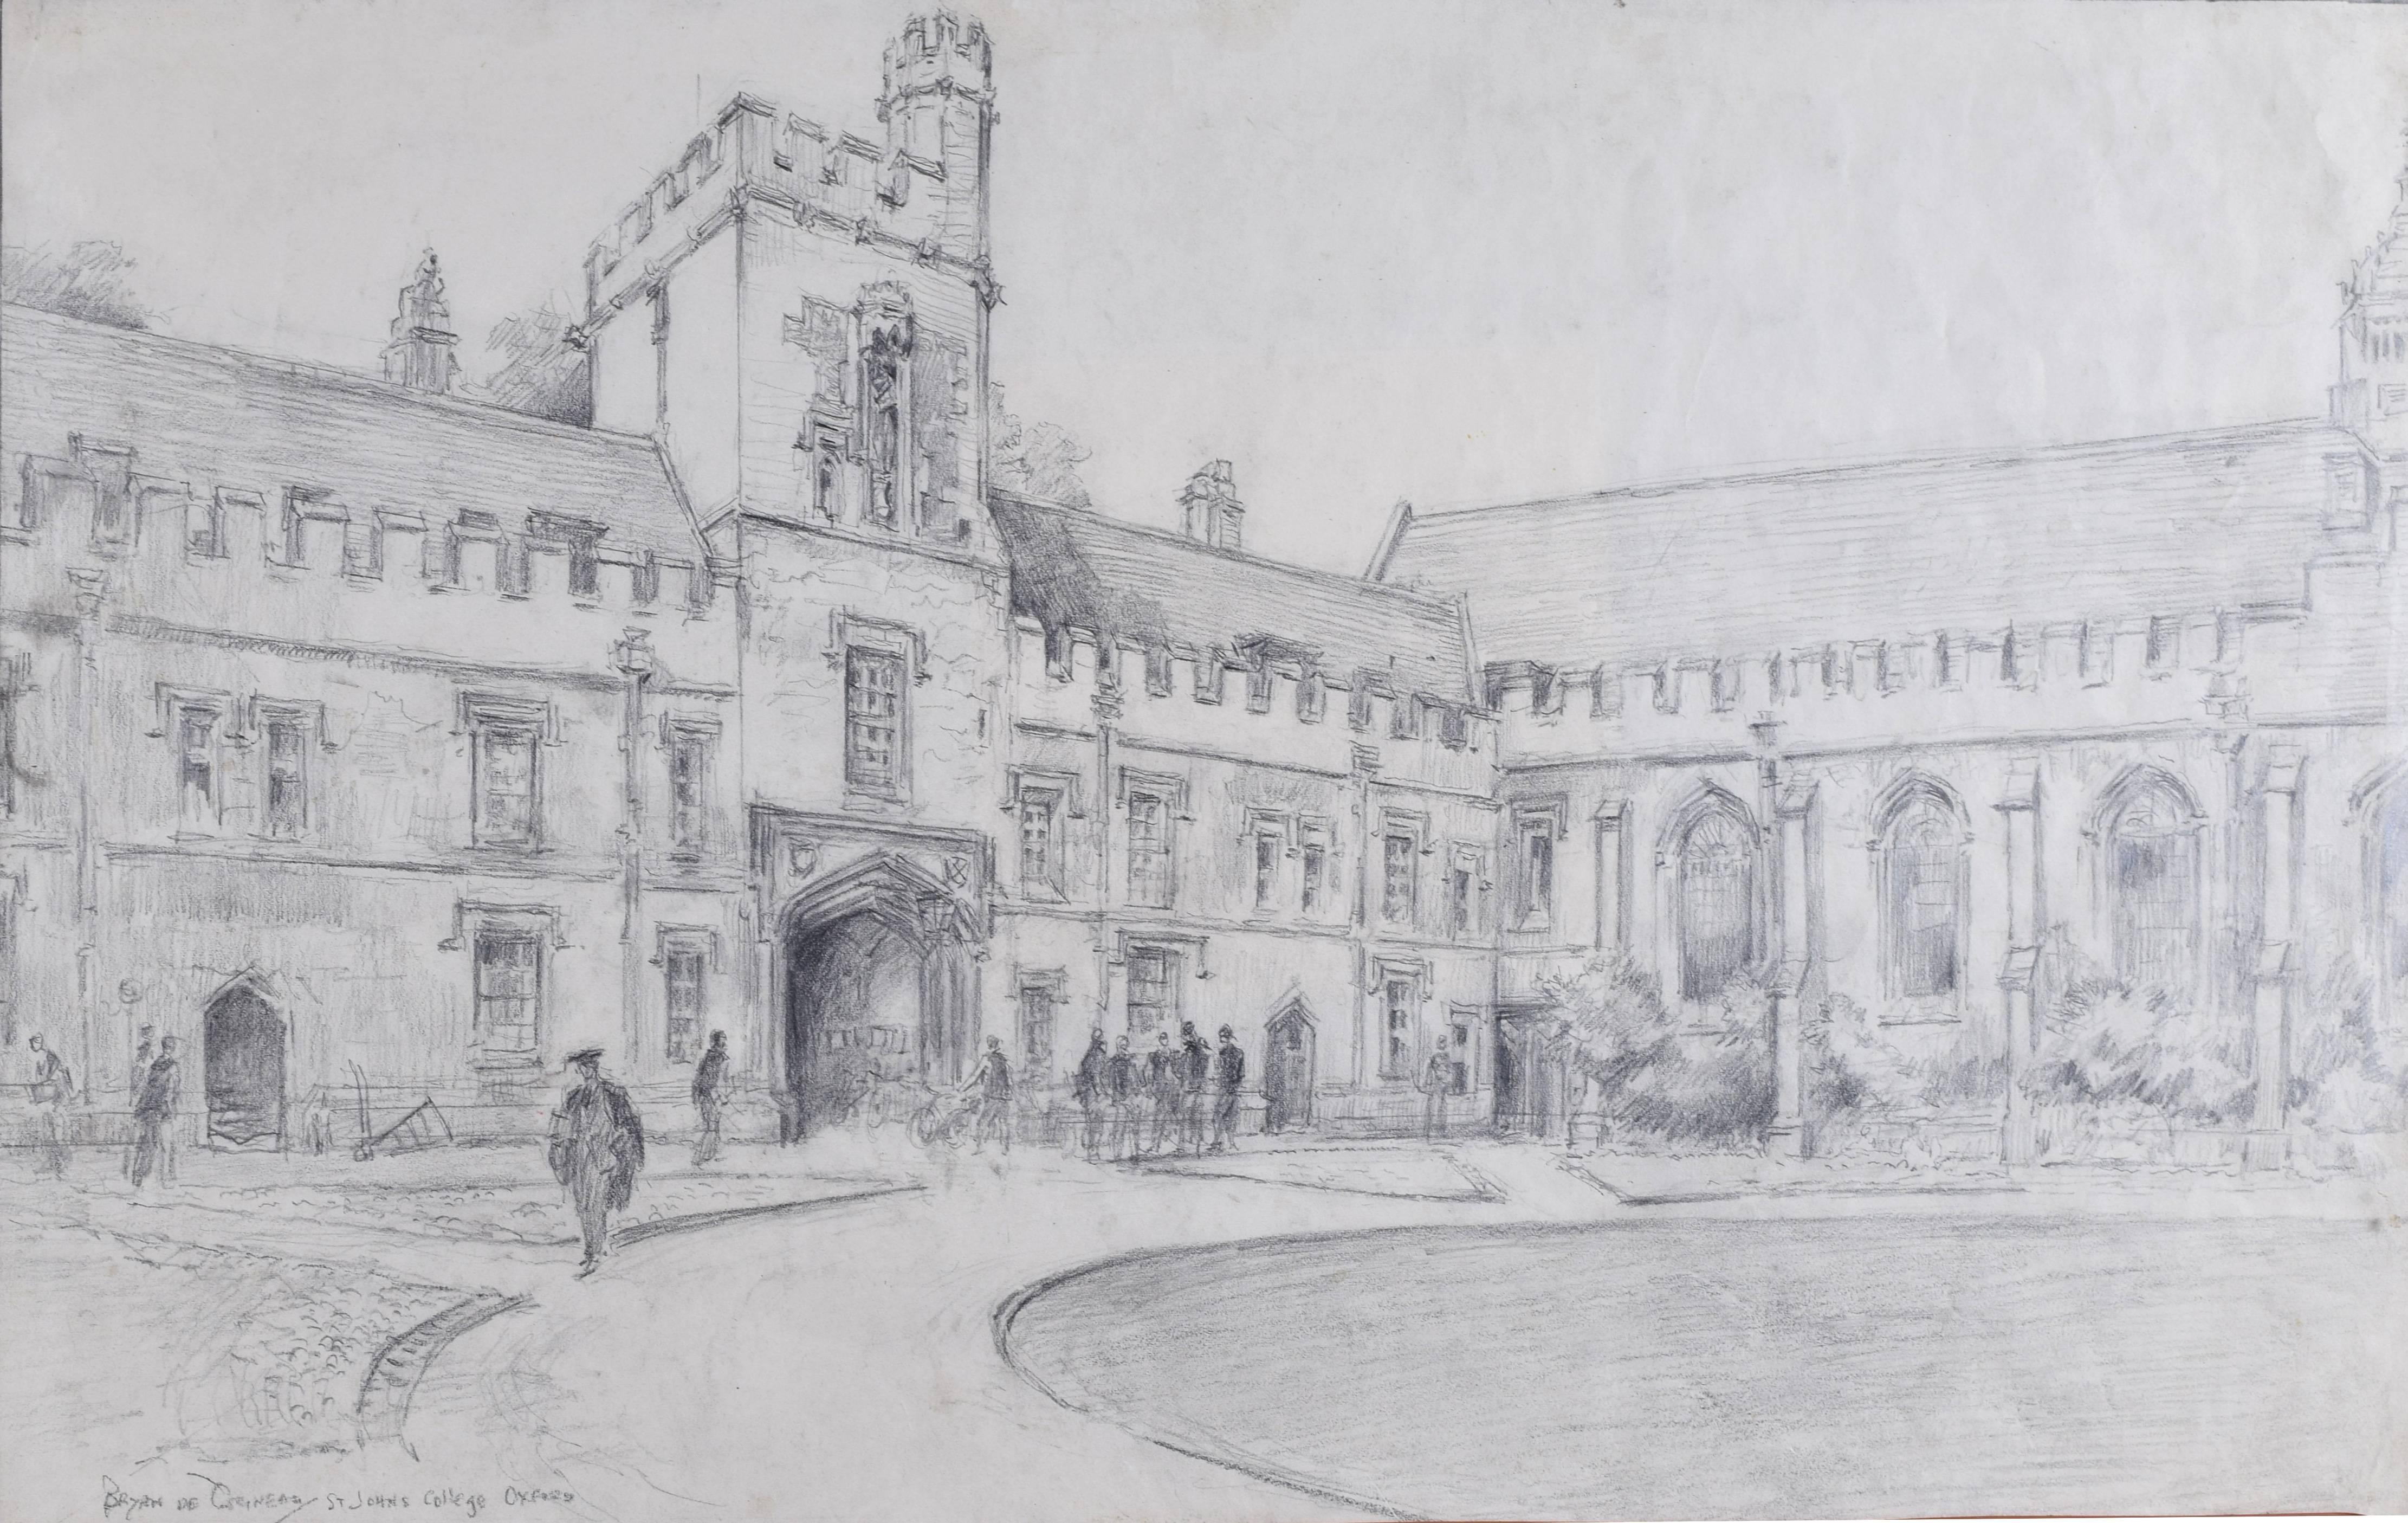 Bryan De Grineau Landscape Art - St John’s College, Oxford Front Quad drawing by Bryan de Grineau